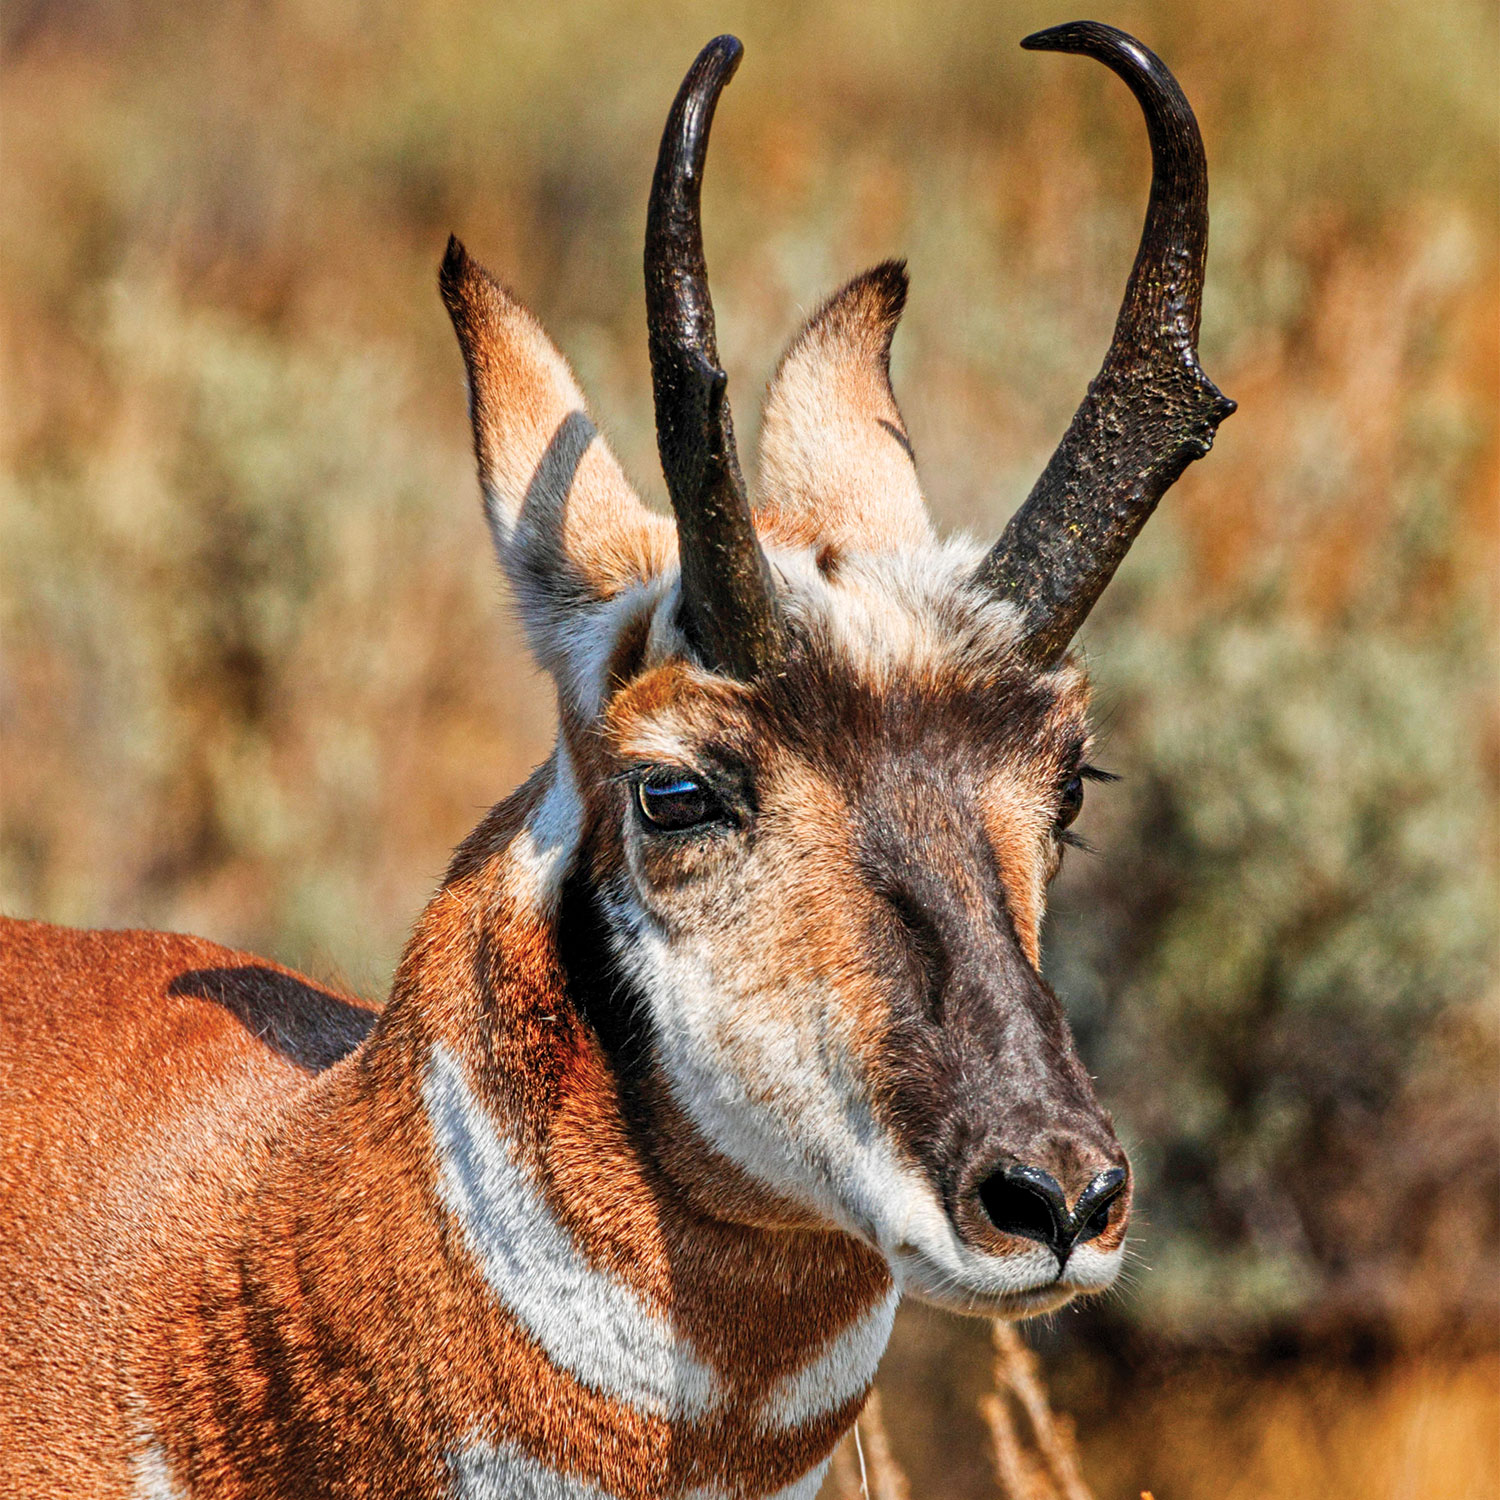 3 Critical Factors that Fuel Deer Antler Growth